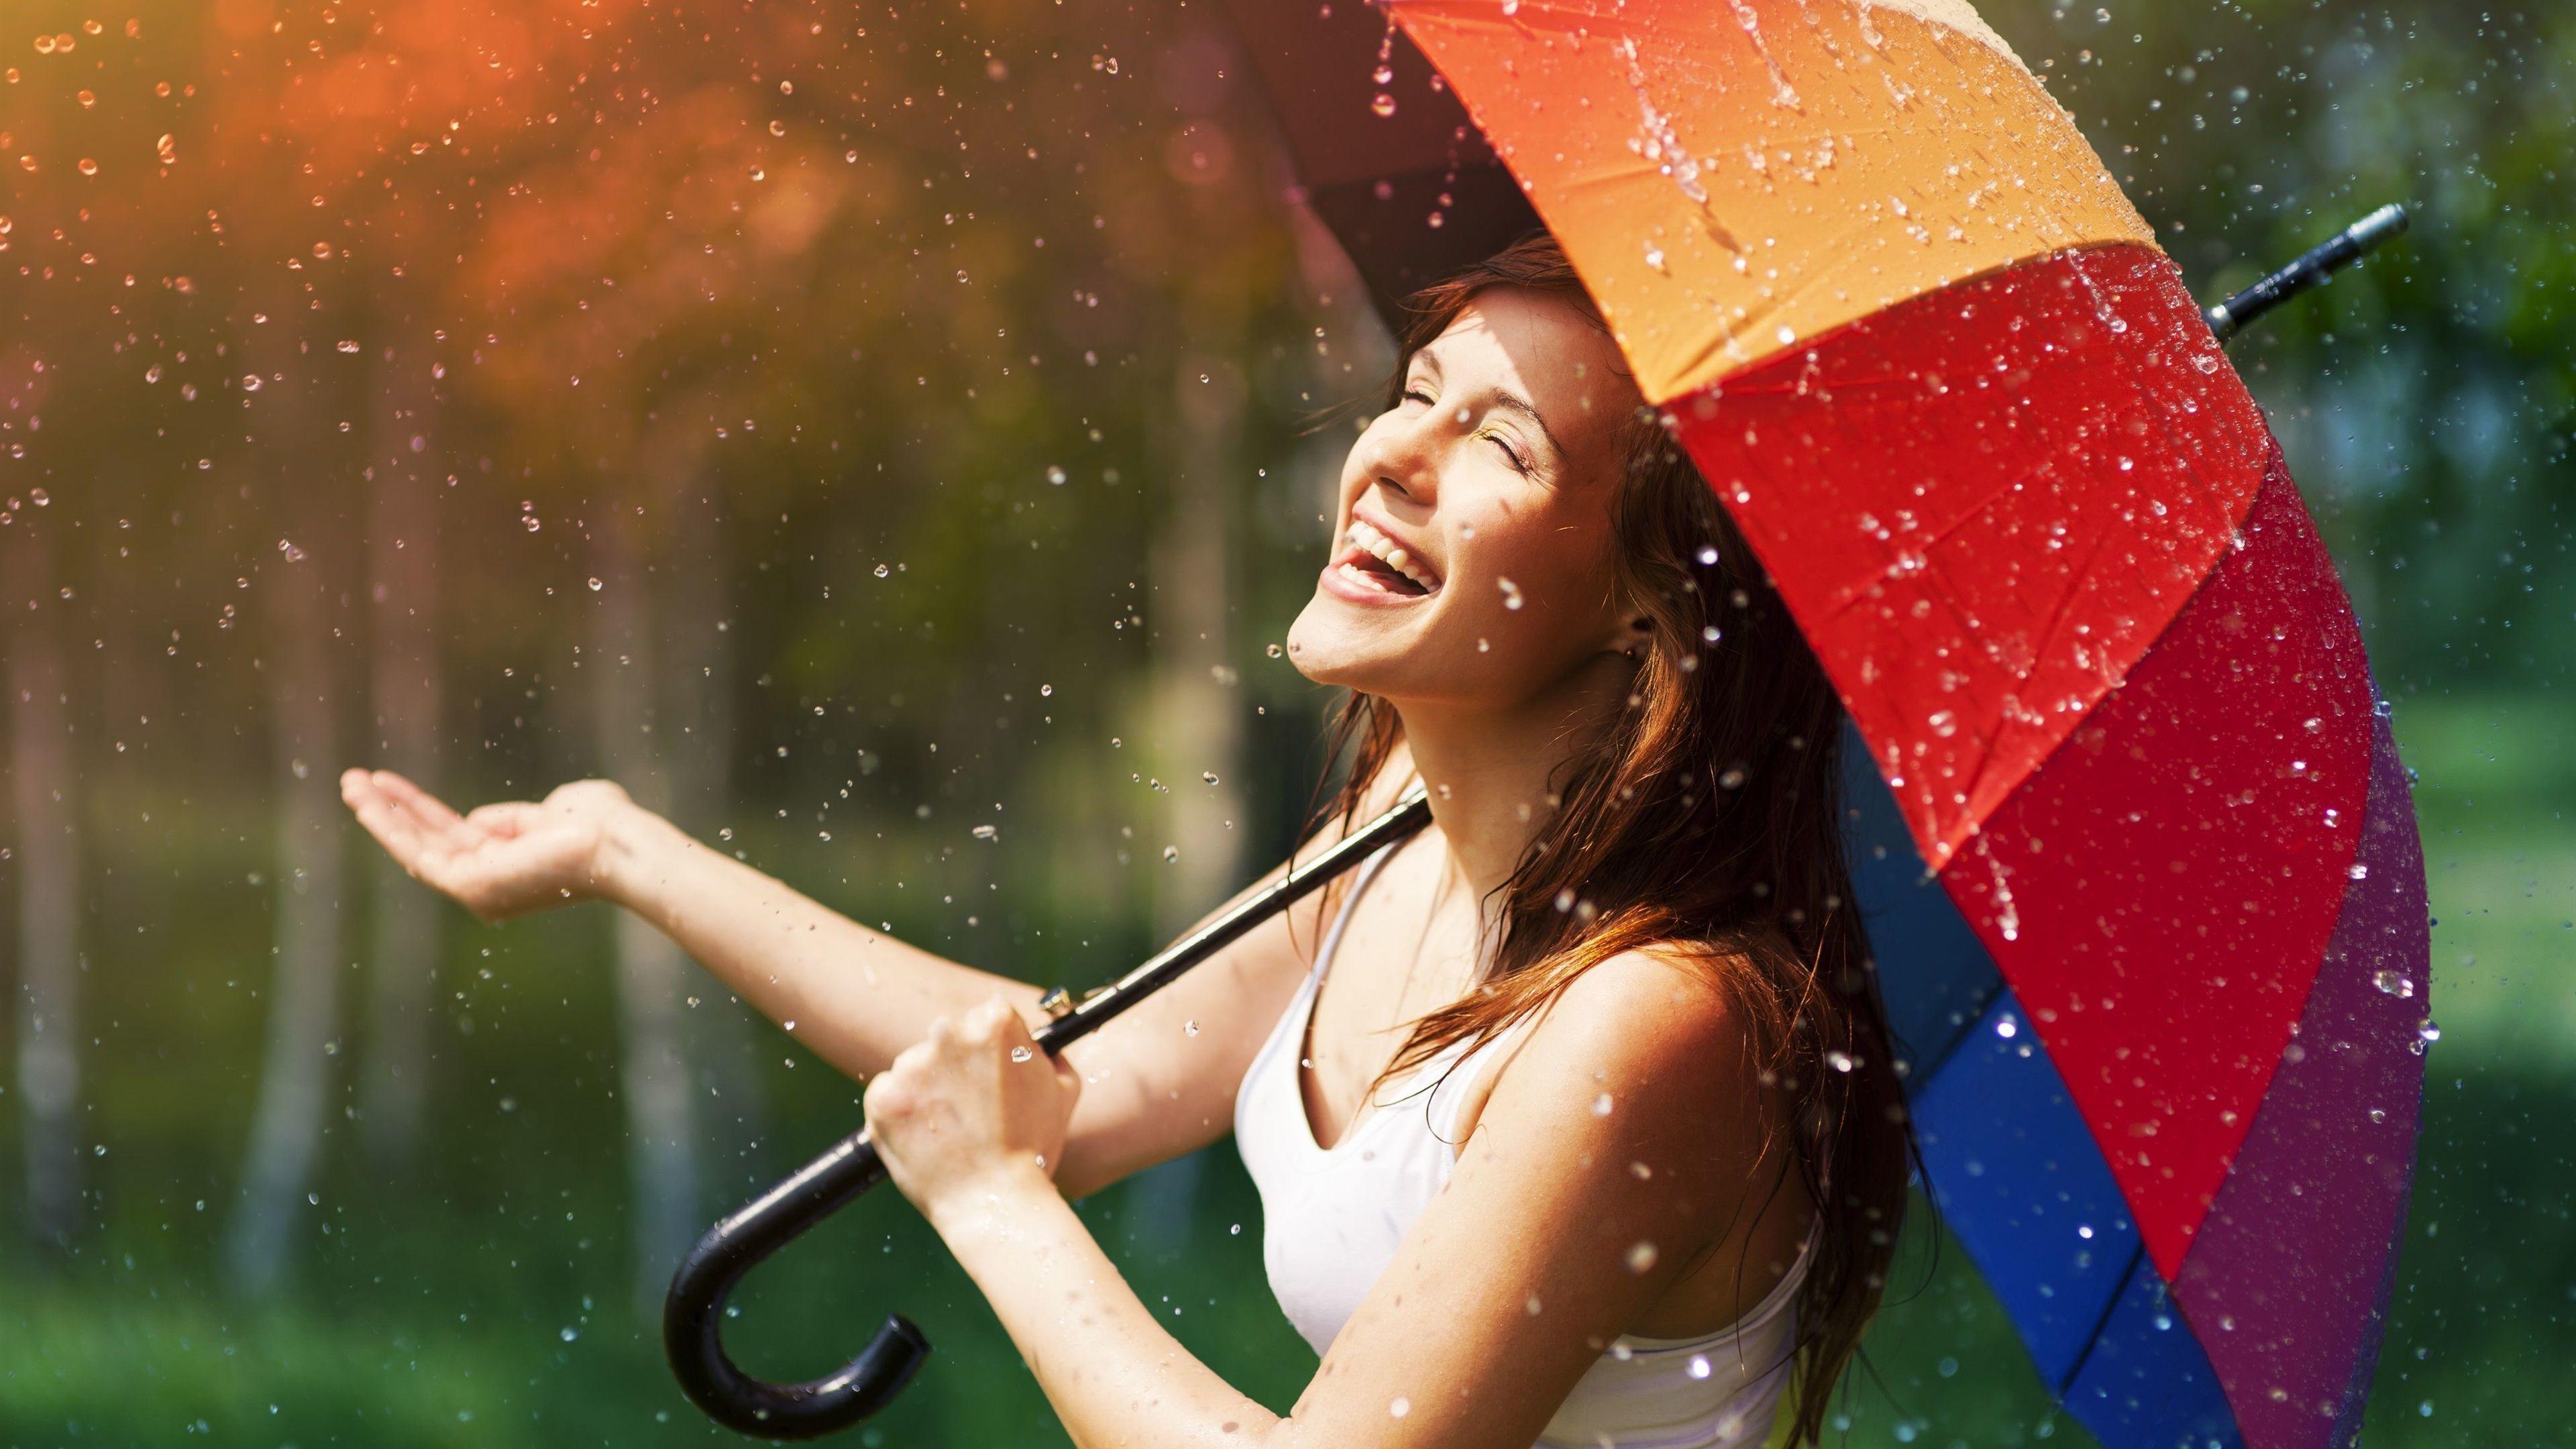 Wallpaper Happy girl in rain, umbrella 3840x2160 UHD 4K Picture, Image